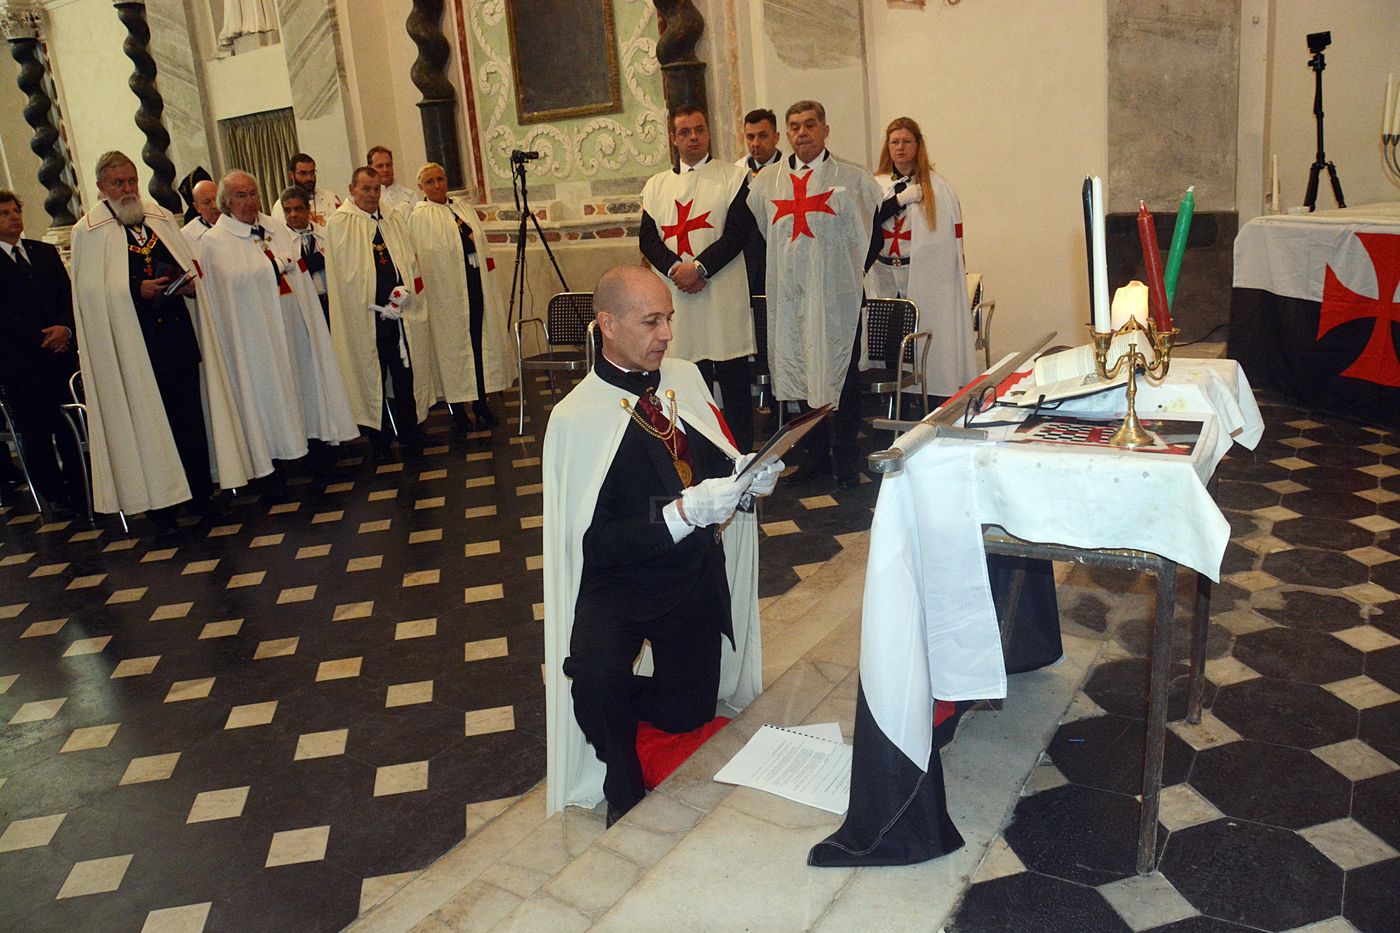 Cavalieri Templari ex chiesa San Francesco Ventimiglia 1 dicembre 2018_30